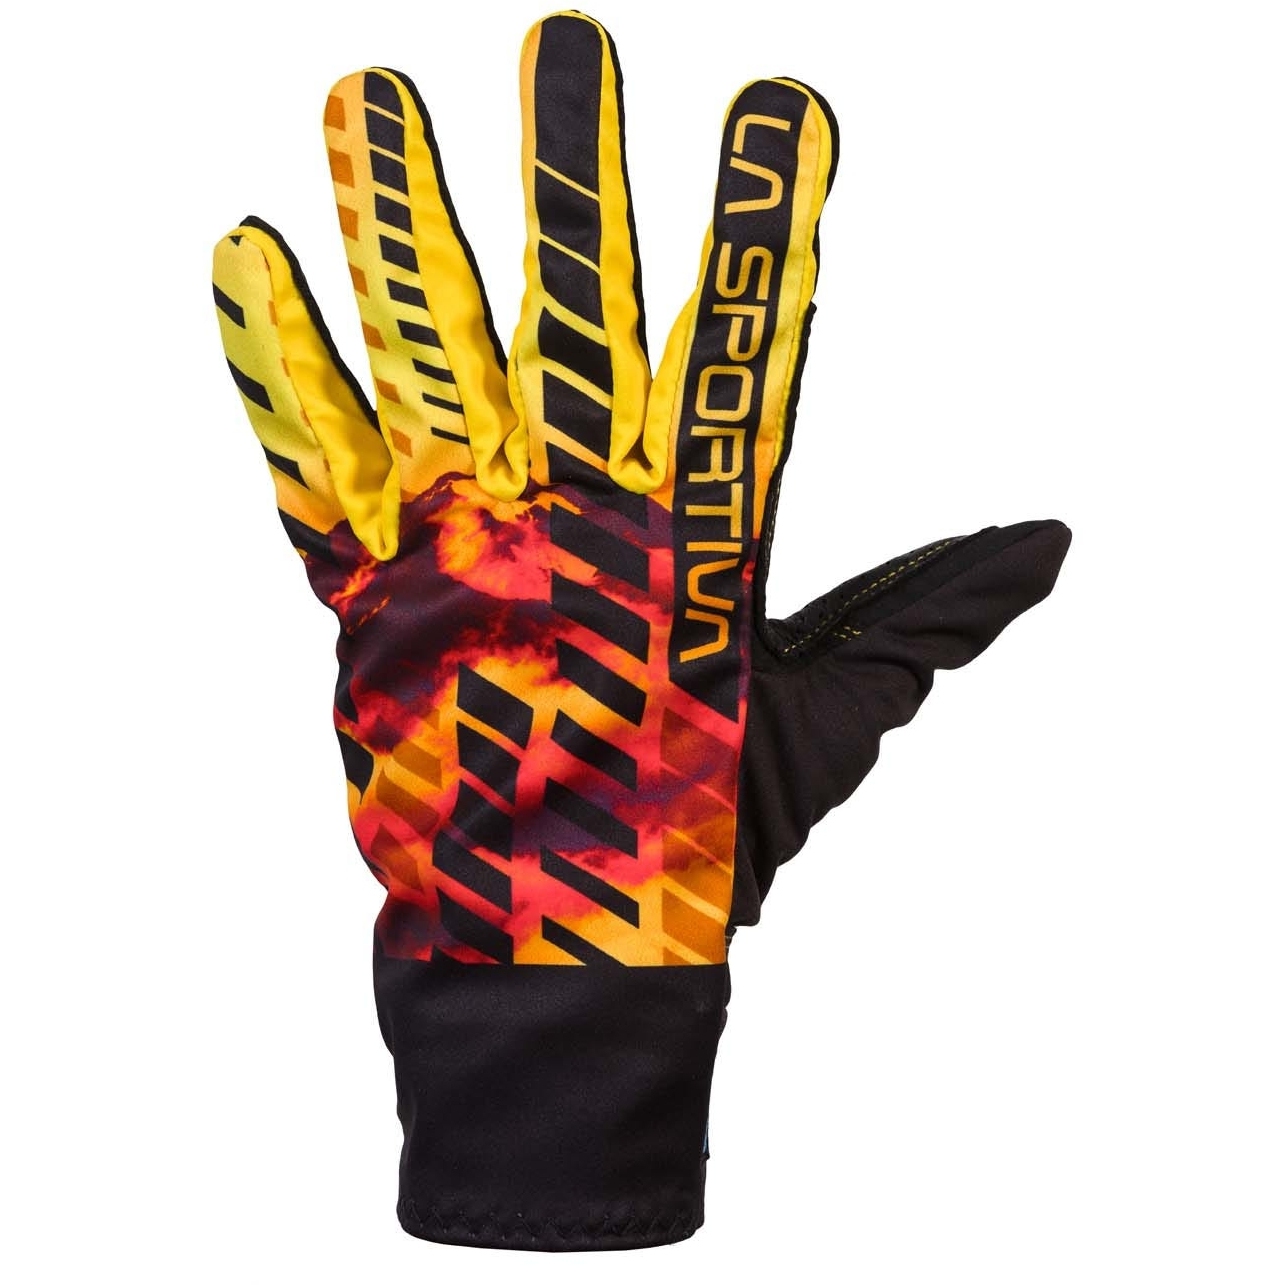 Produktbild von La Sportiva Skimo Race Handschuhe - Schwarz/Gelb